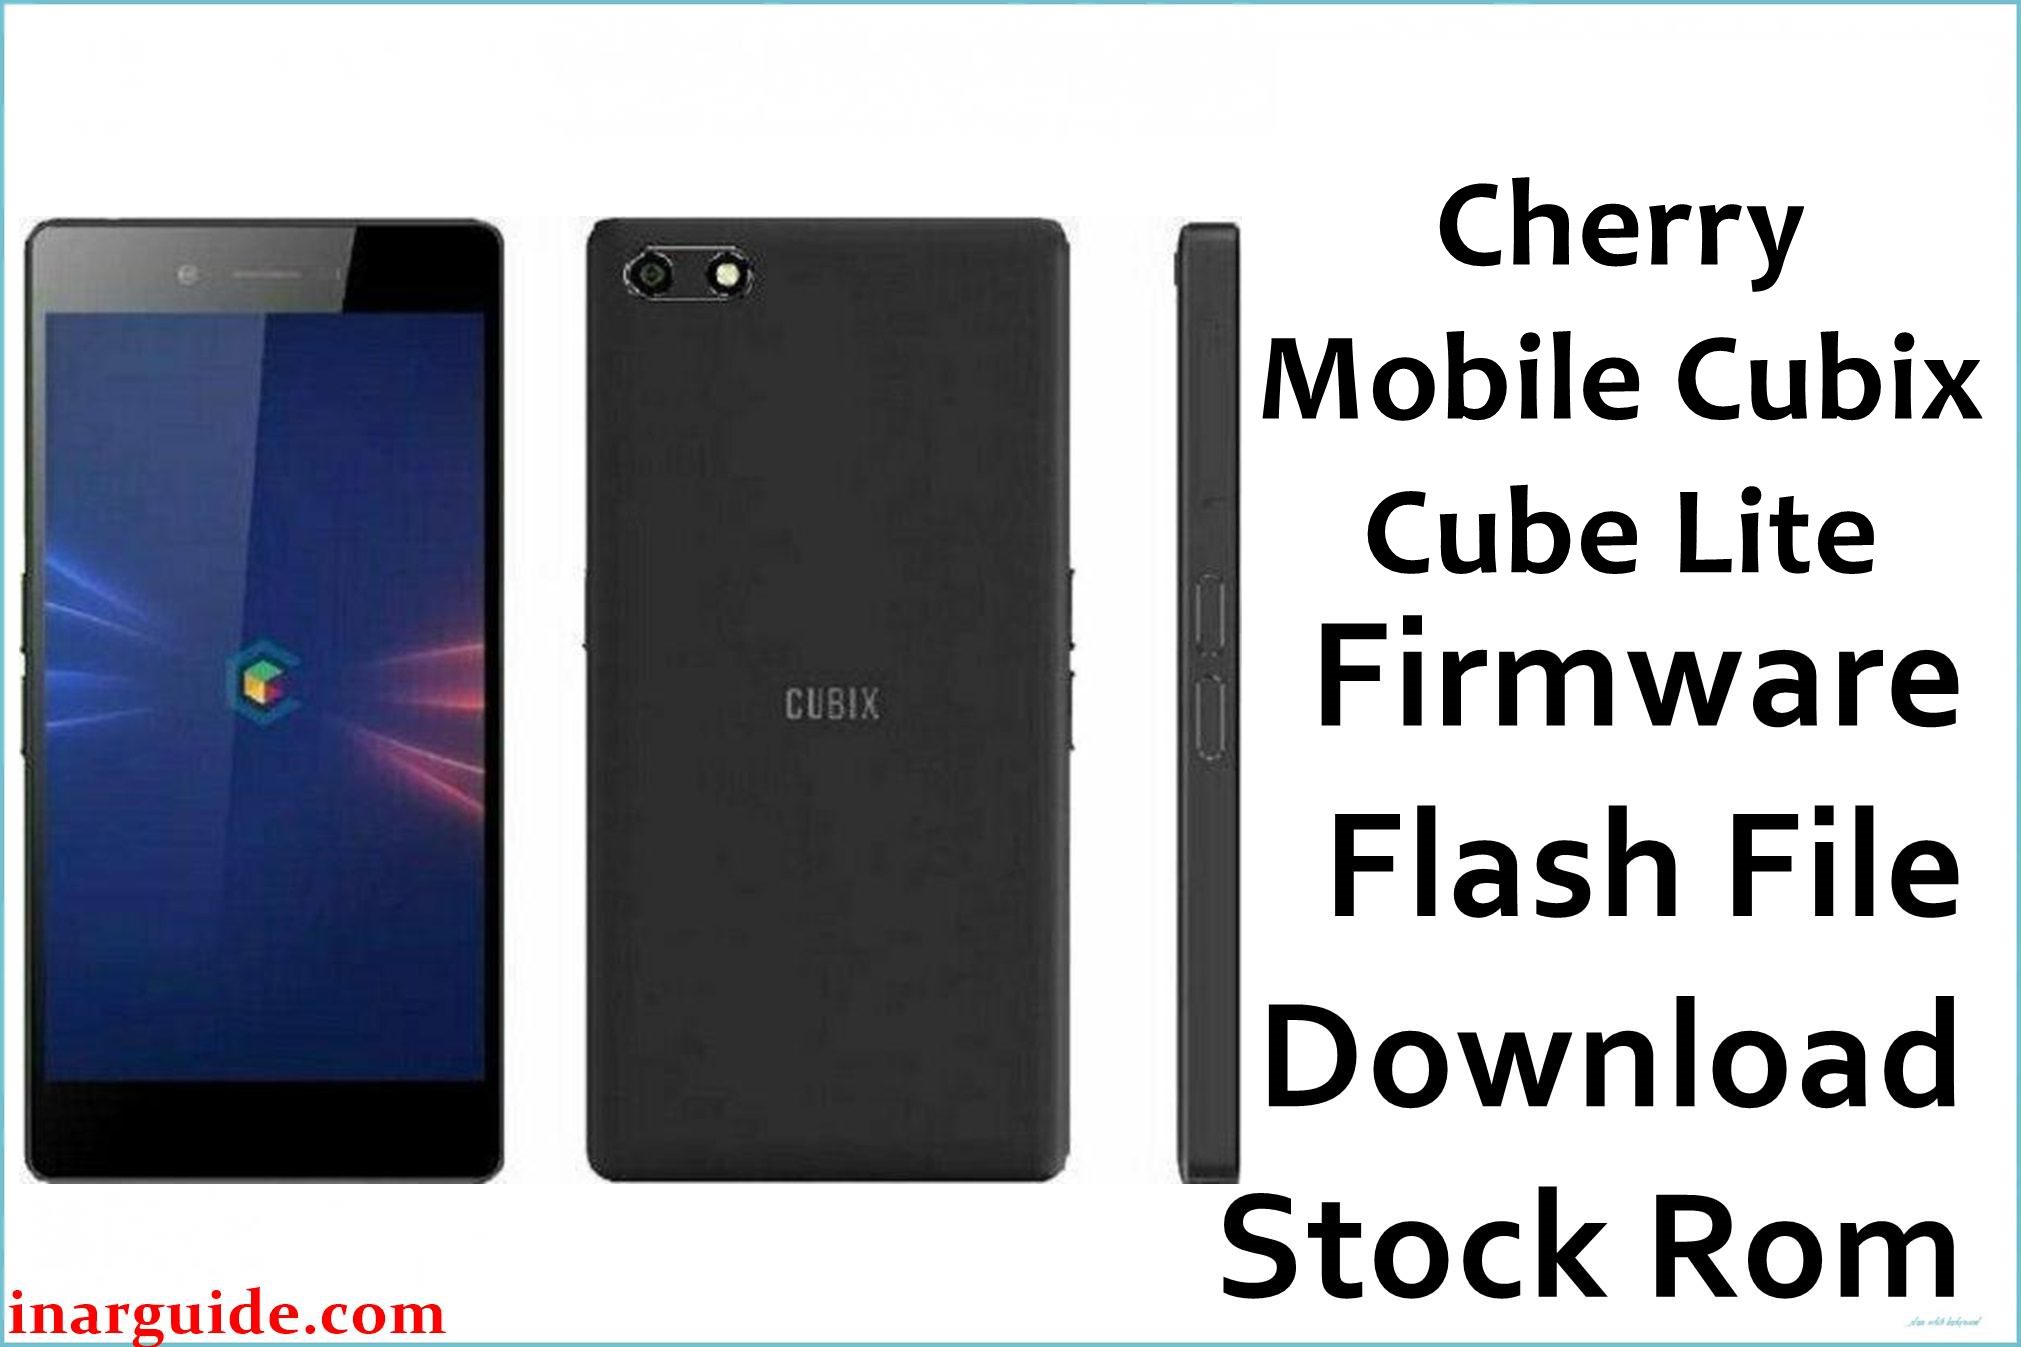 Cherry Mobile Cubix Cube Lite